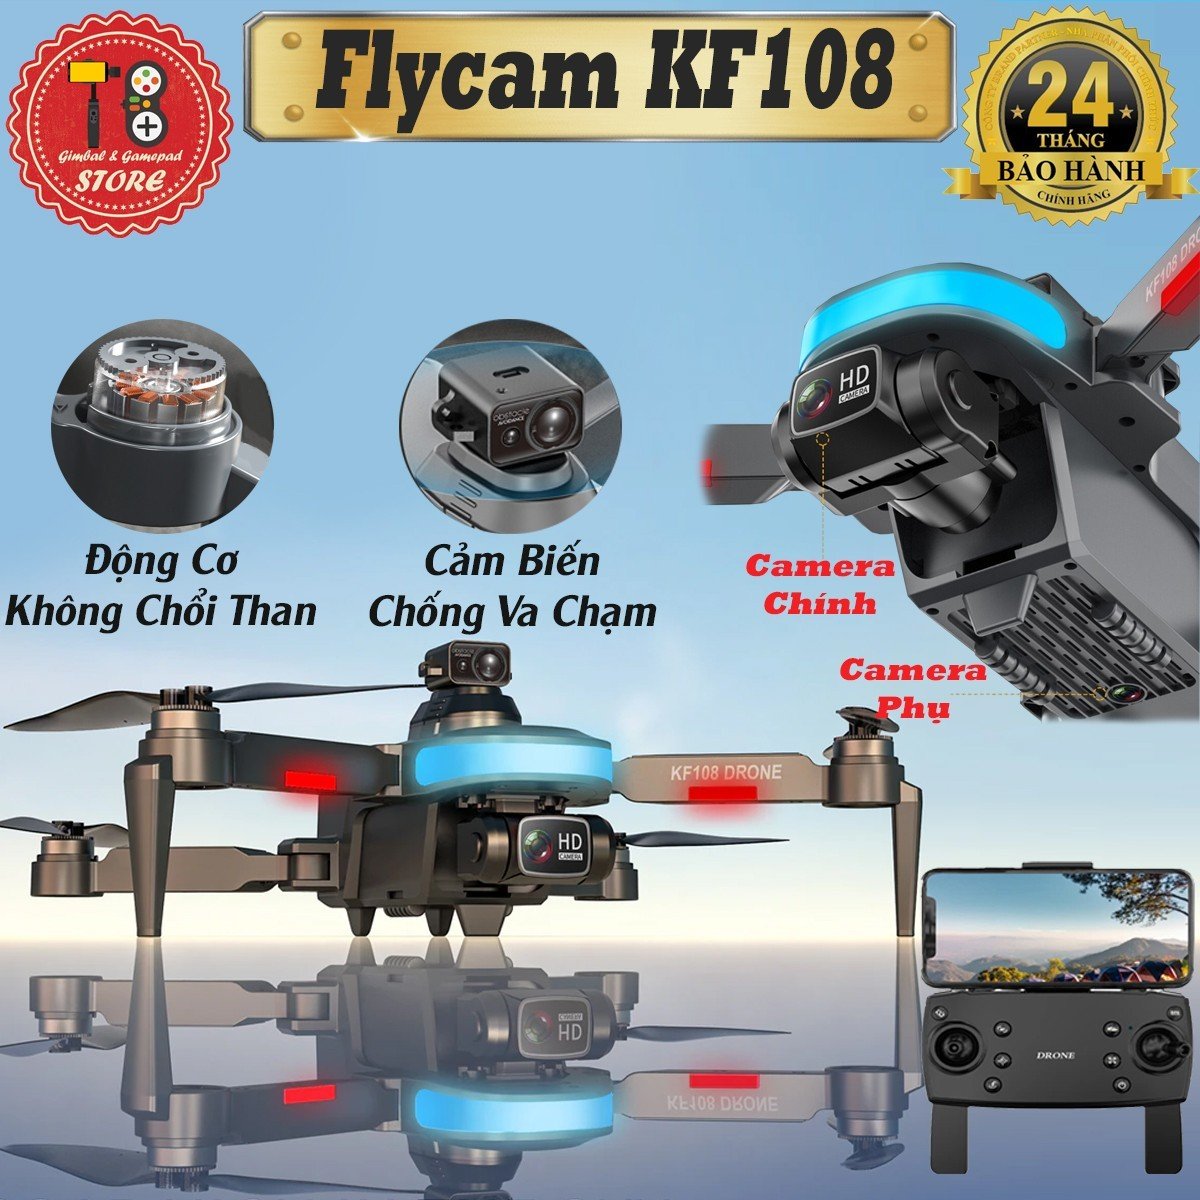 Flycam mini KF108 Pro động cơ không chổi than - 2 camera quay phim chụp ảnh 4k ful HD, Plycam điều khiển từ xa có cảm biến va chạm, Pin Siêu Trâu